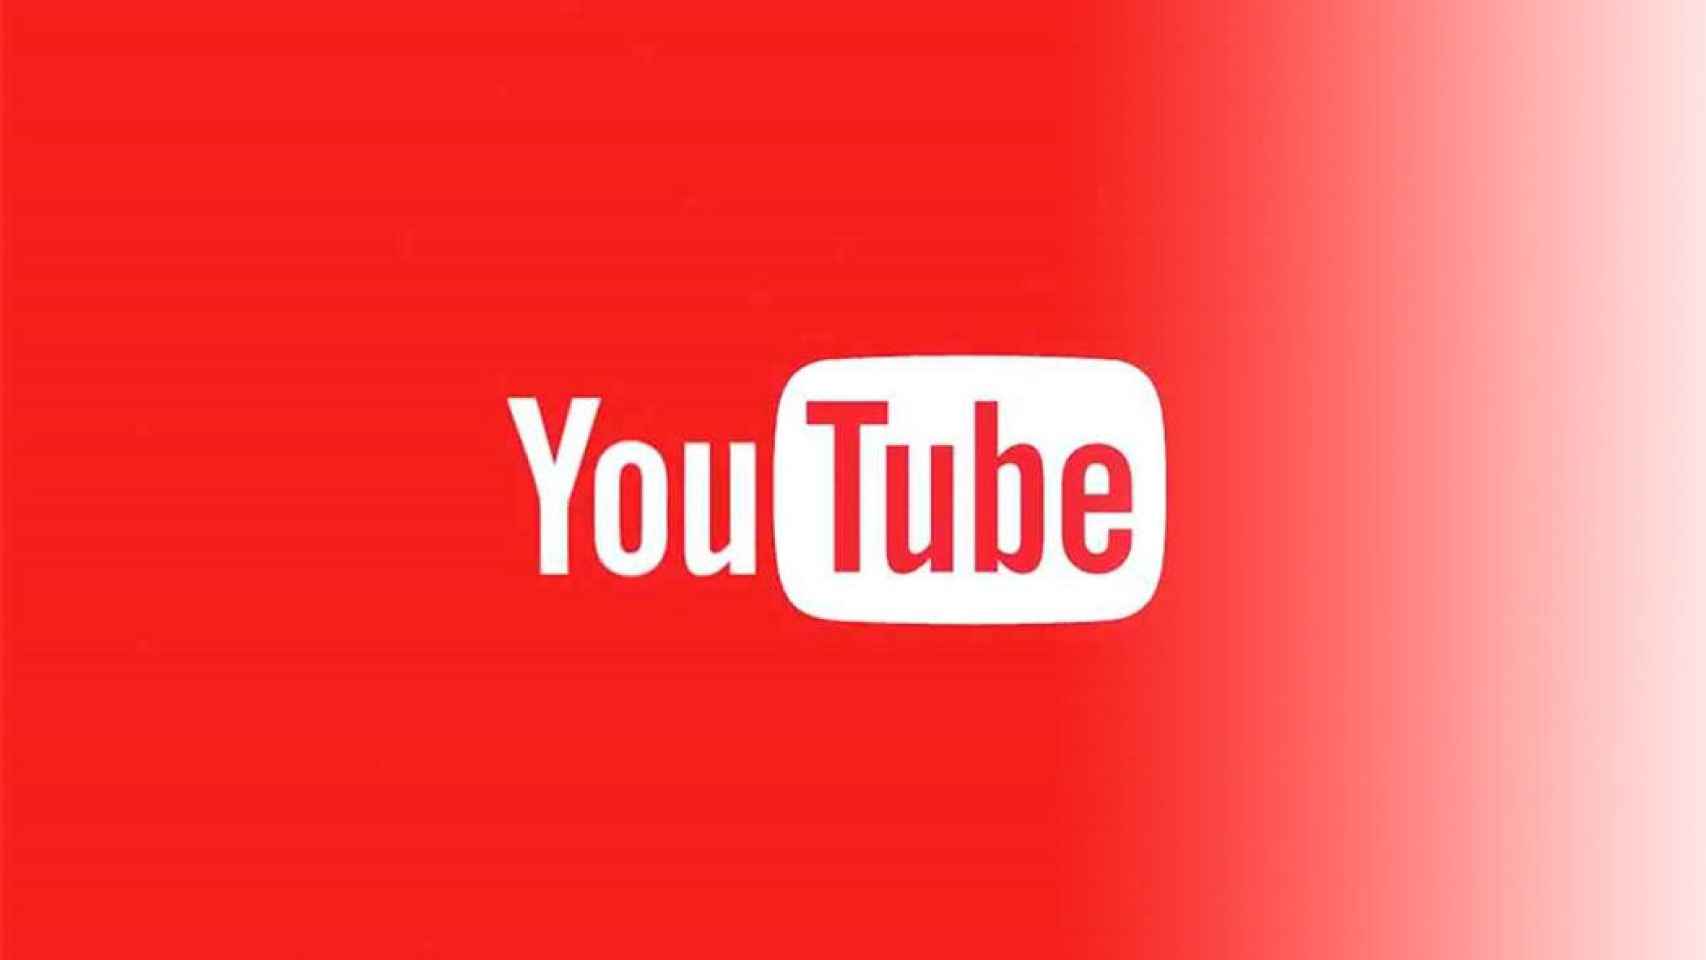 YouTube se adaptará a cualquier tamaño del vídeo en vertical